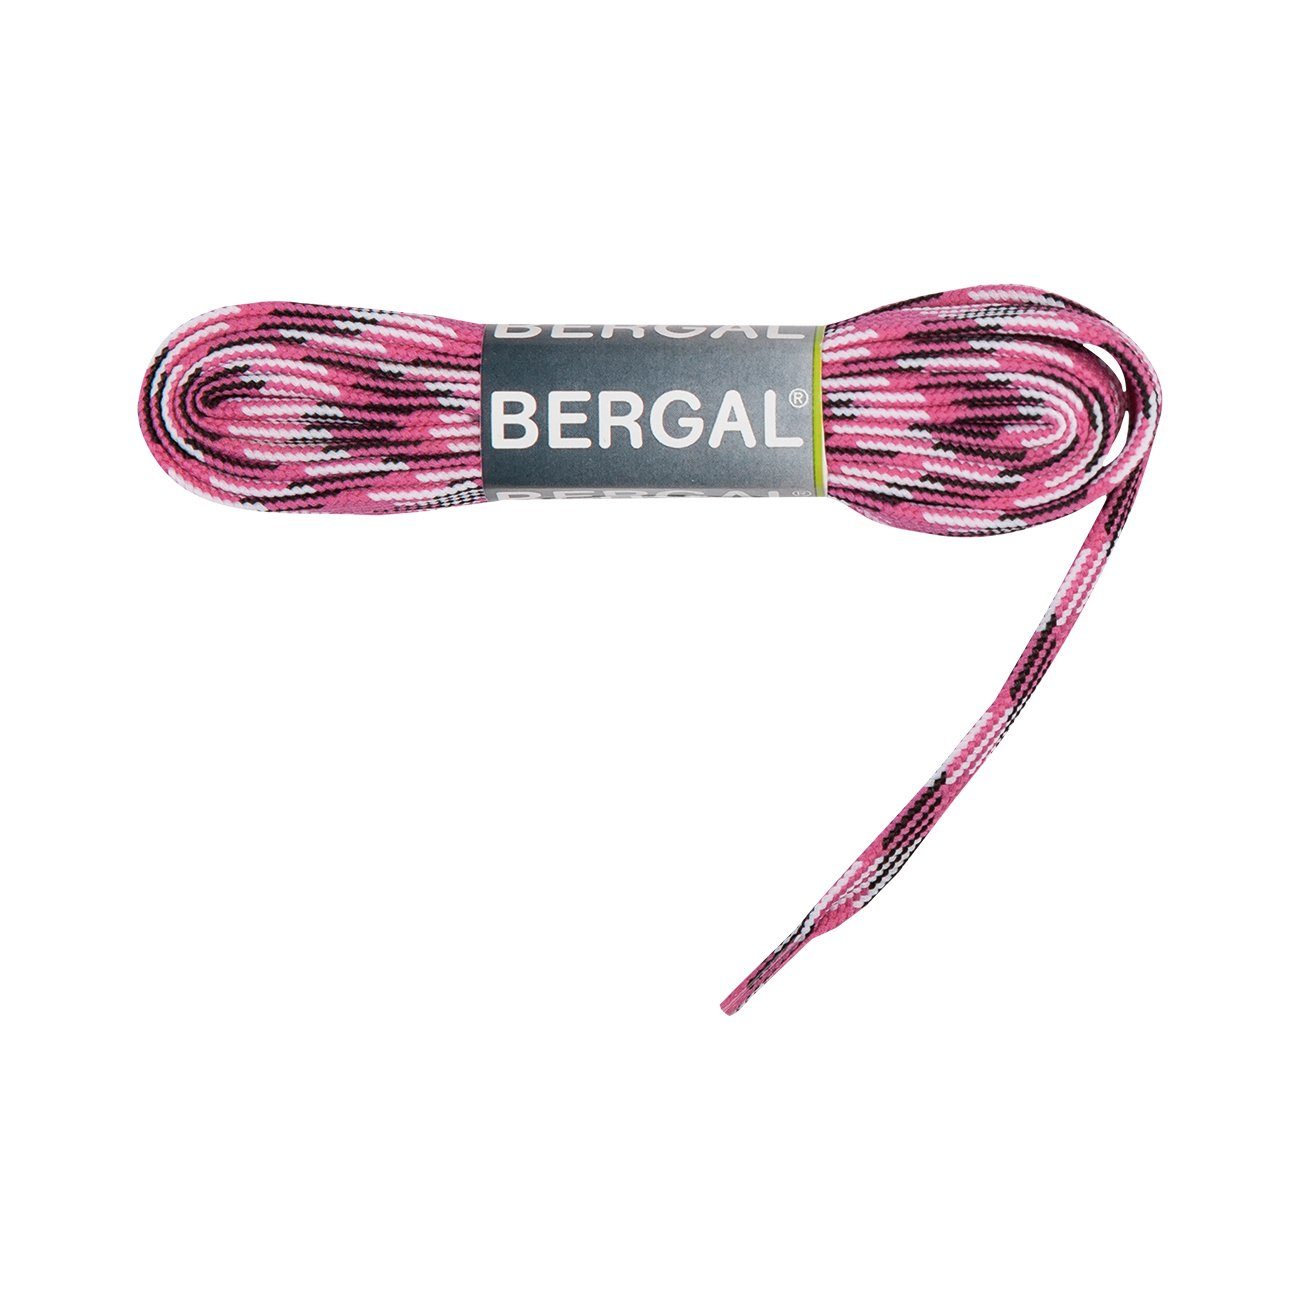 Bergal Schnürsenkel Sneaker Laces - Flach - 10 mm Breit Schwarz/Weiß/Pink